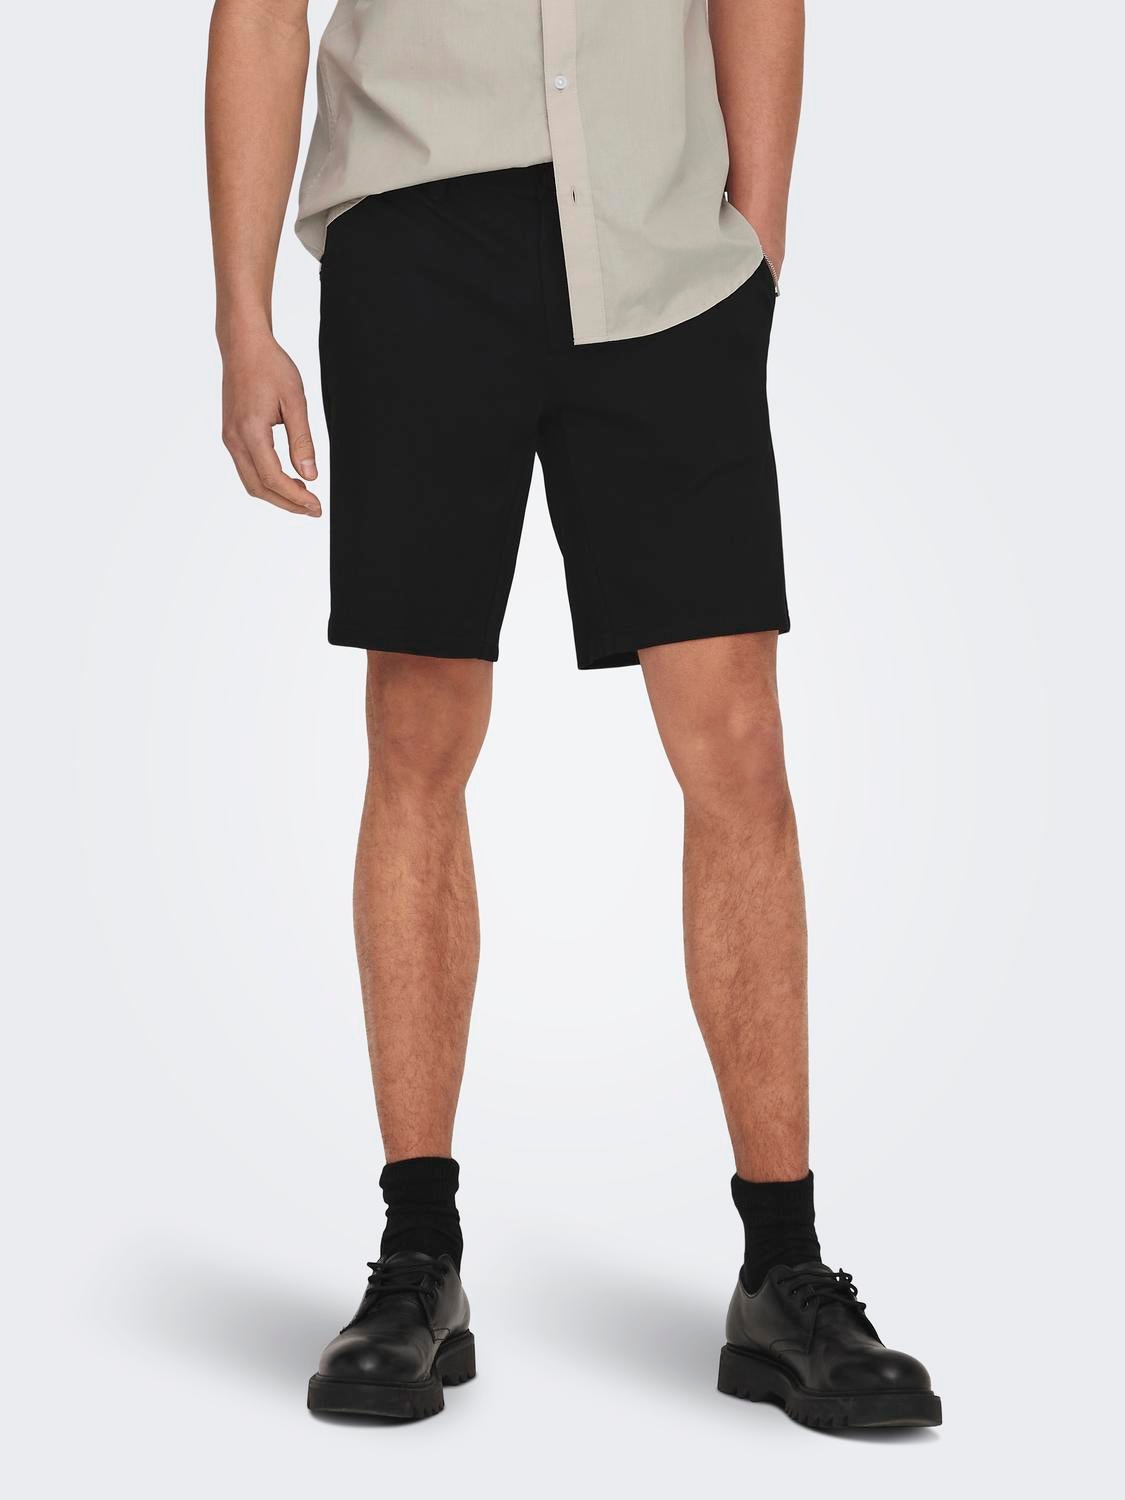 ONLY & SONS Shorts Corte regular Cintura media -Black - 22018667